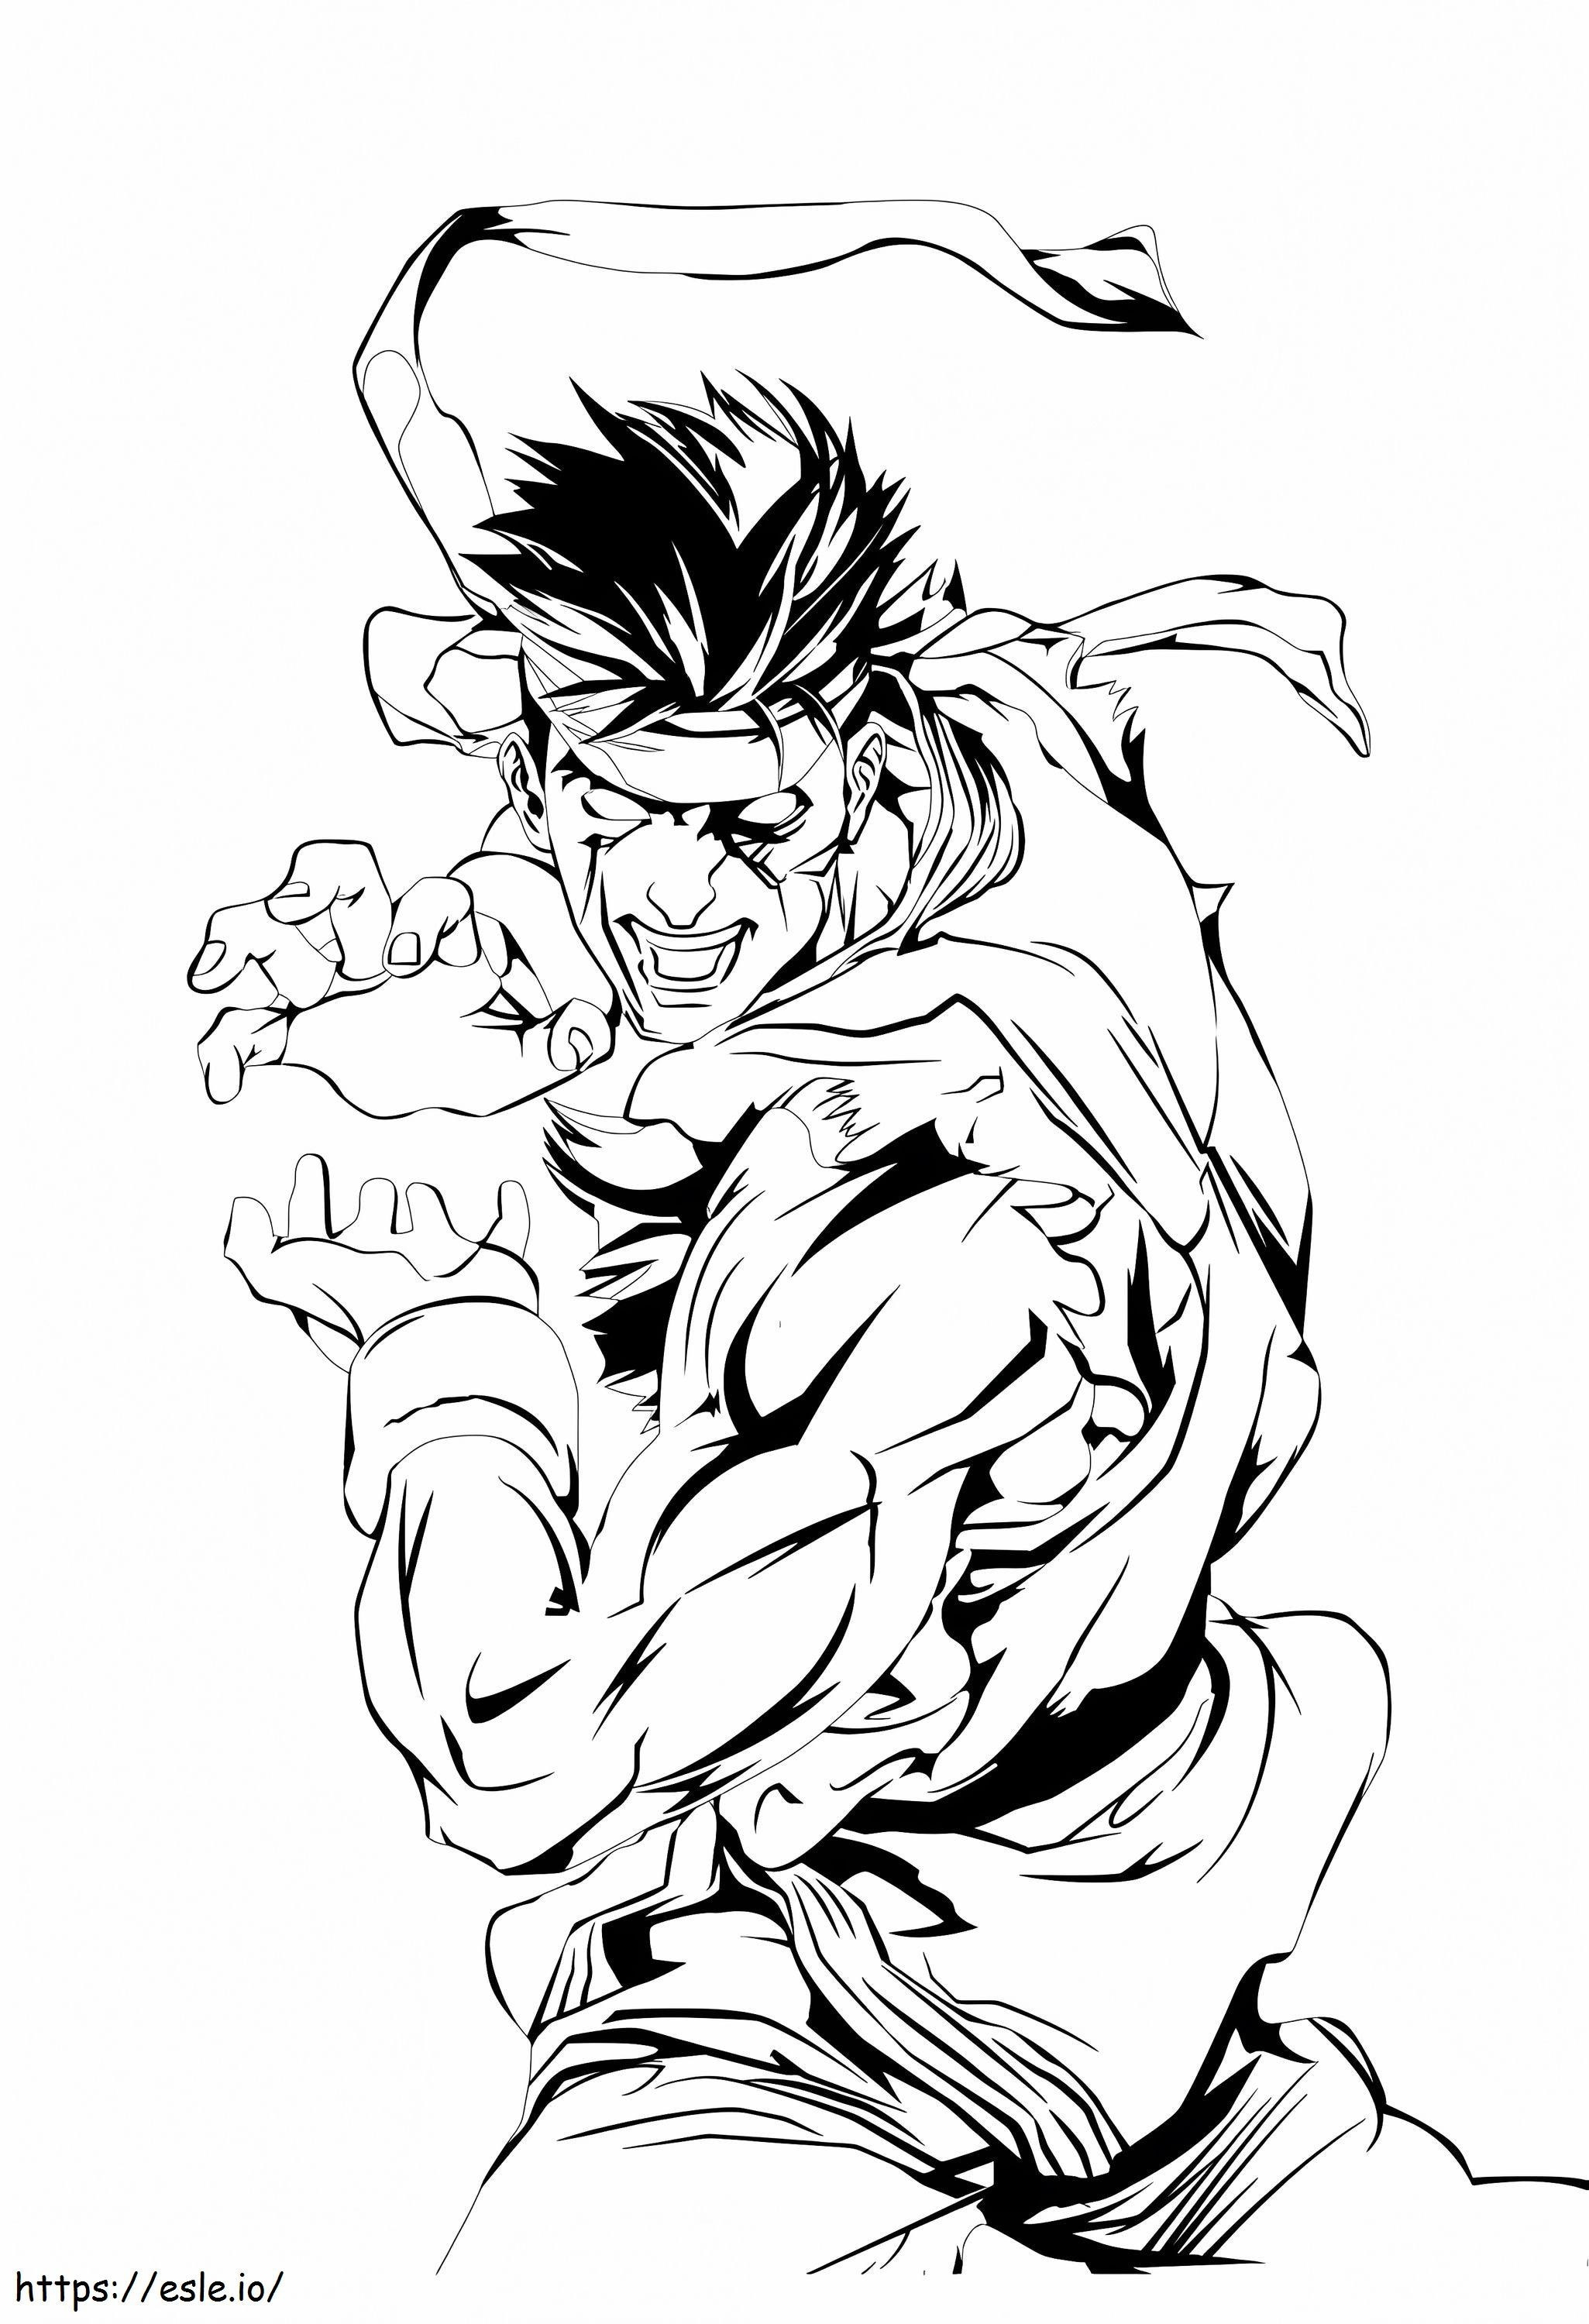 Ryu rău de colorat